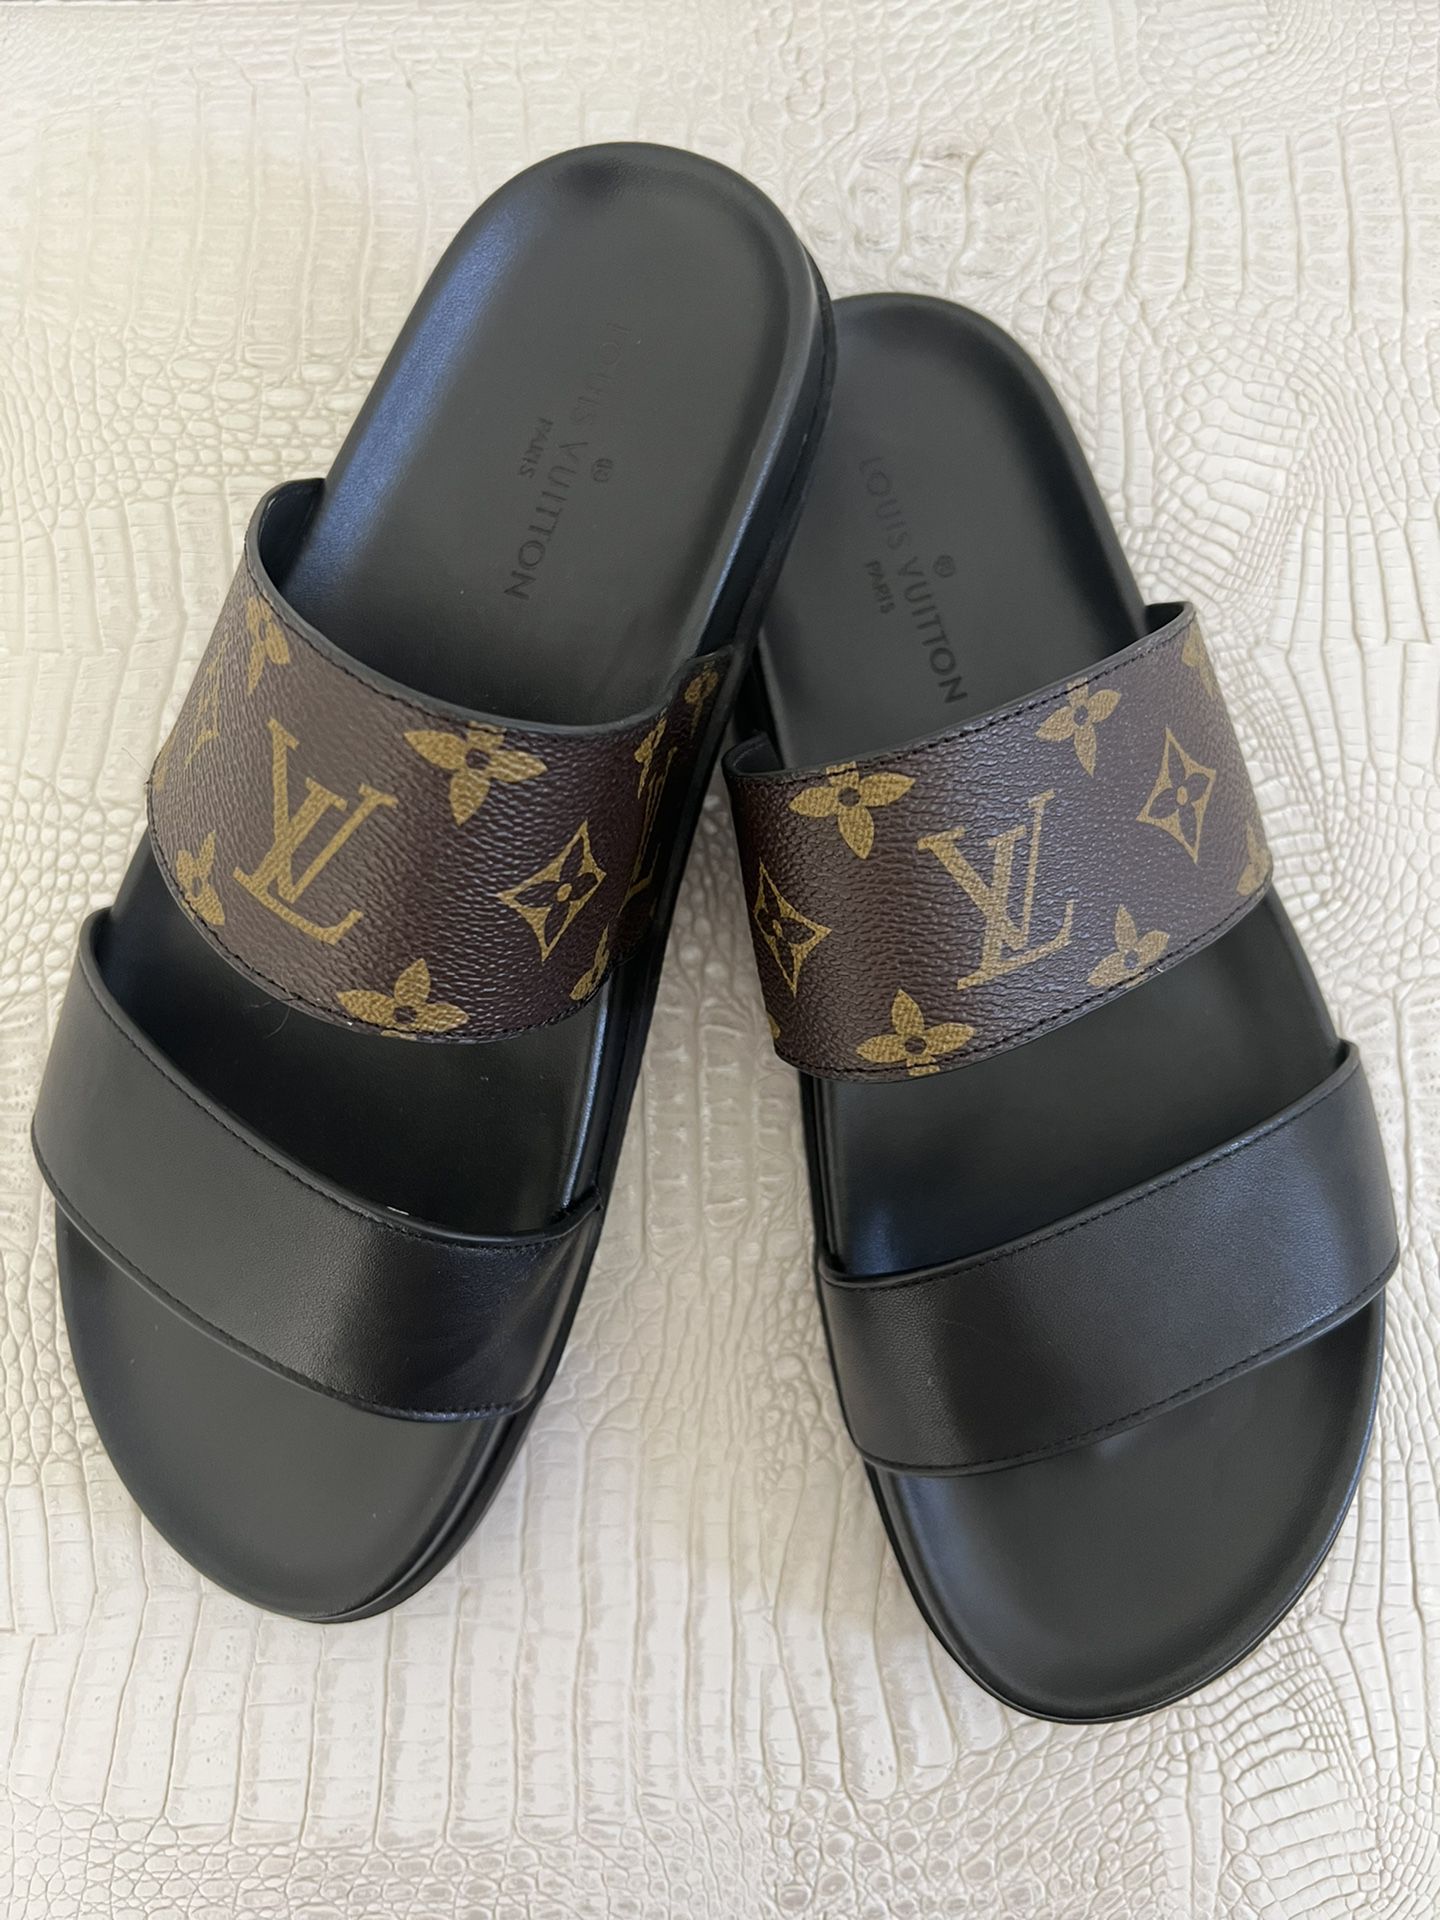 Louis Vuitton - Flat Comfort Mule/Slides (Sz40) for Sale in San